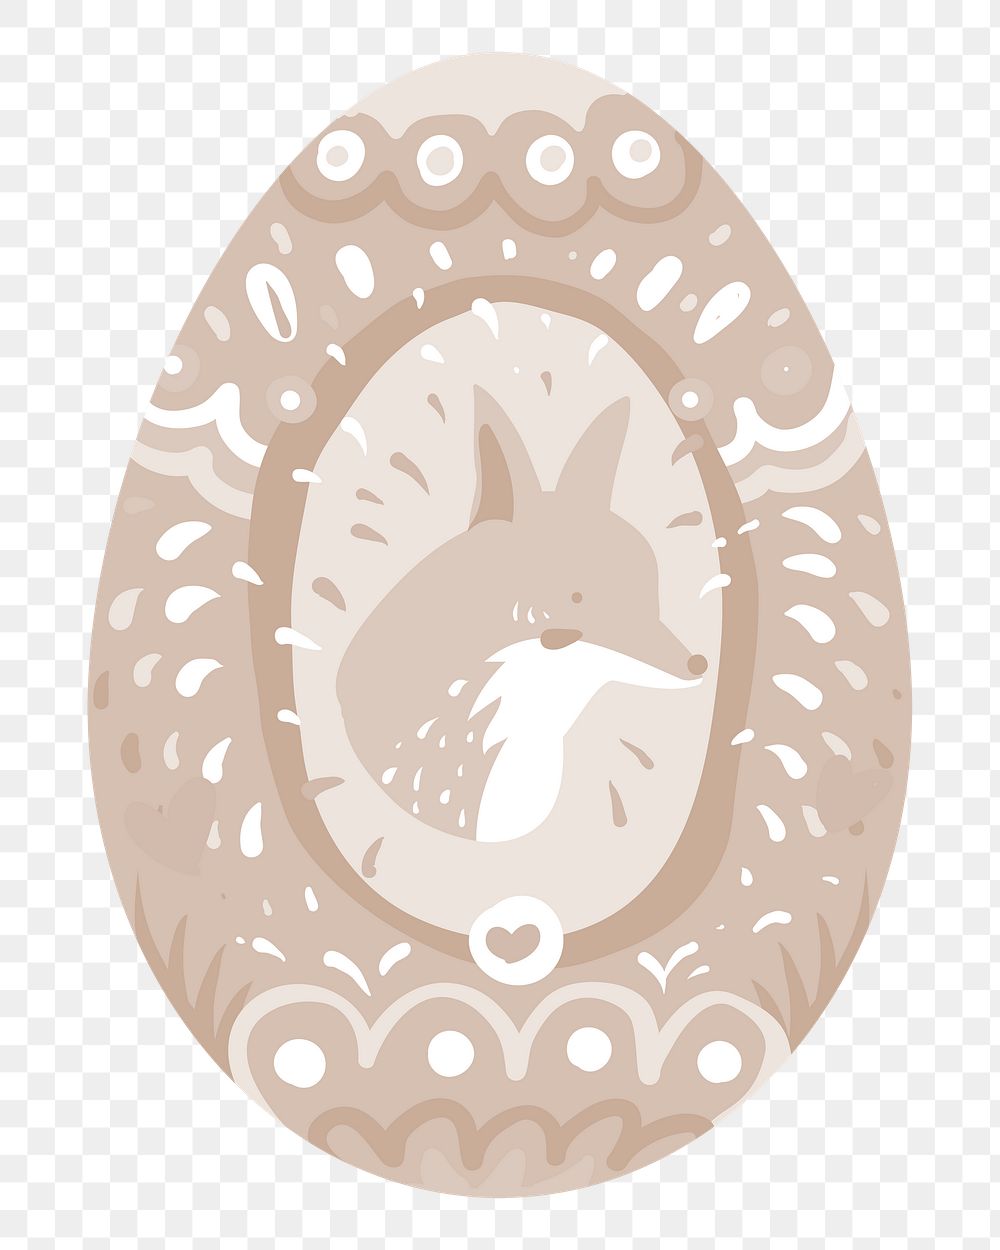 Png brown fox easter egg illustration, transparent background